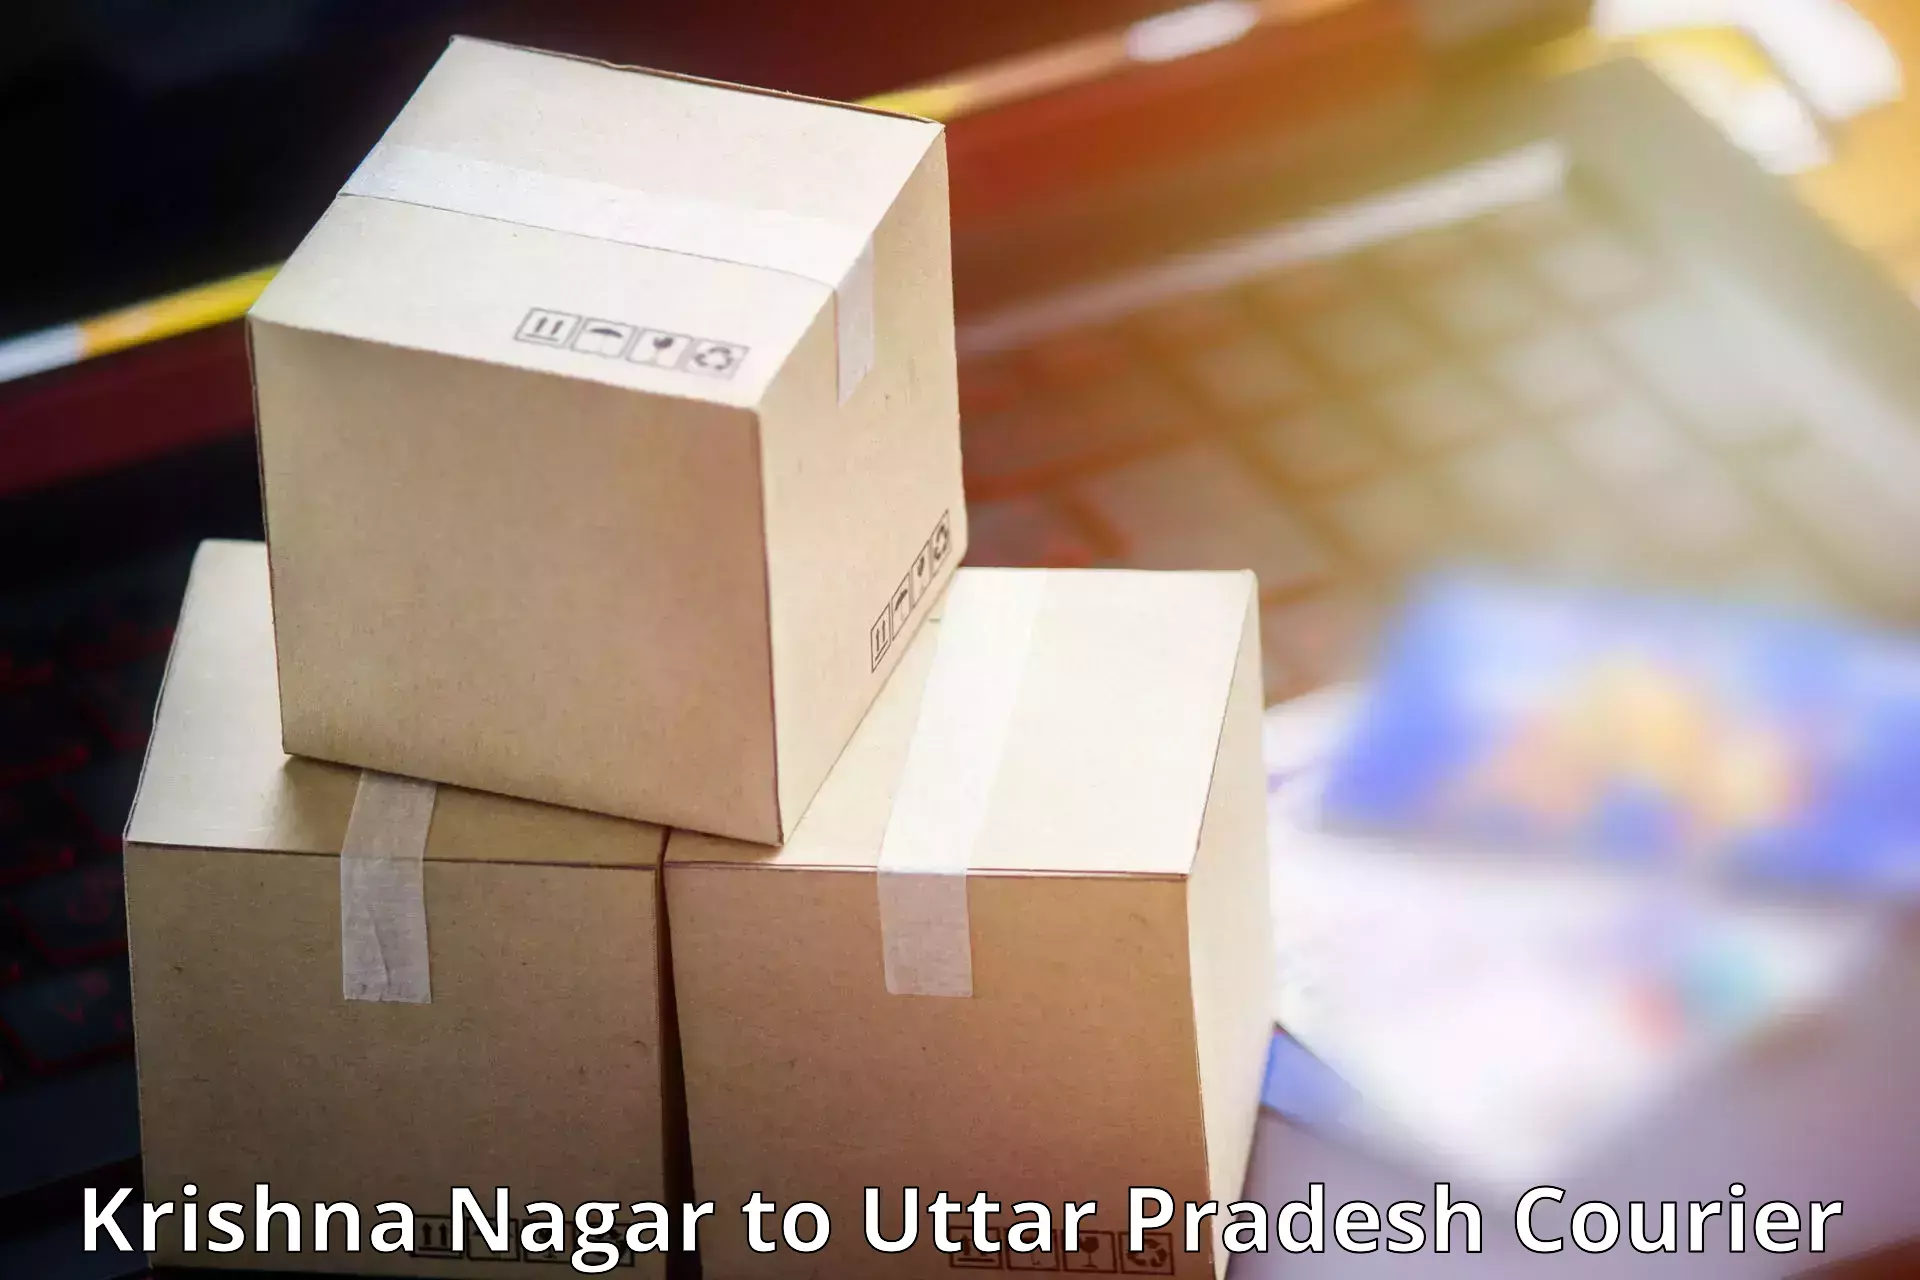 Customer-centric shipping Krishna Nagar to Khadda